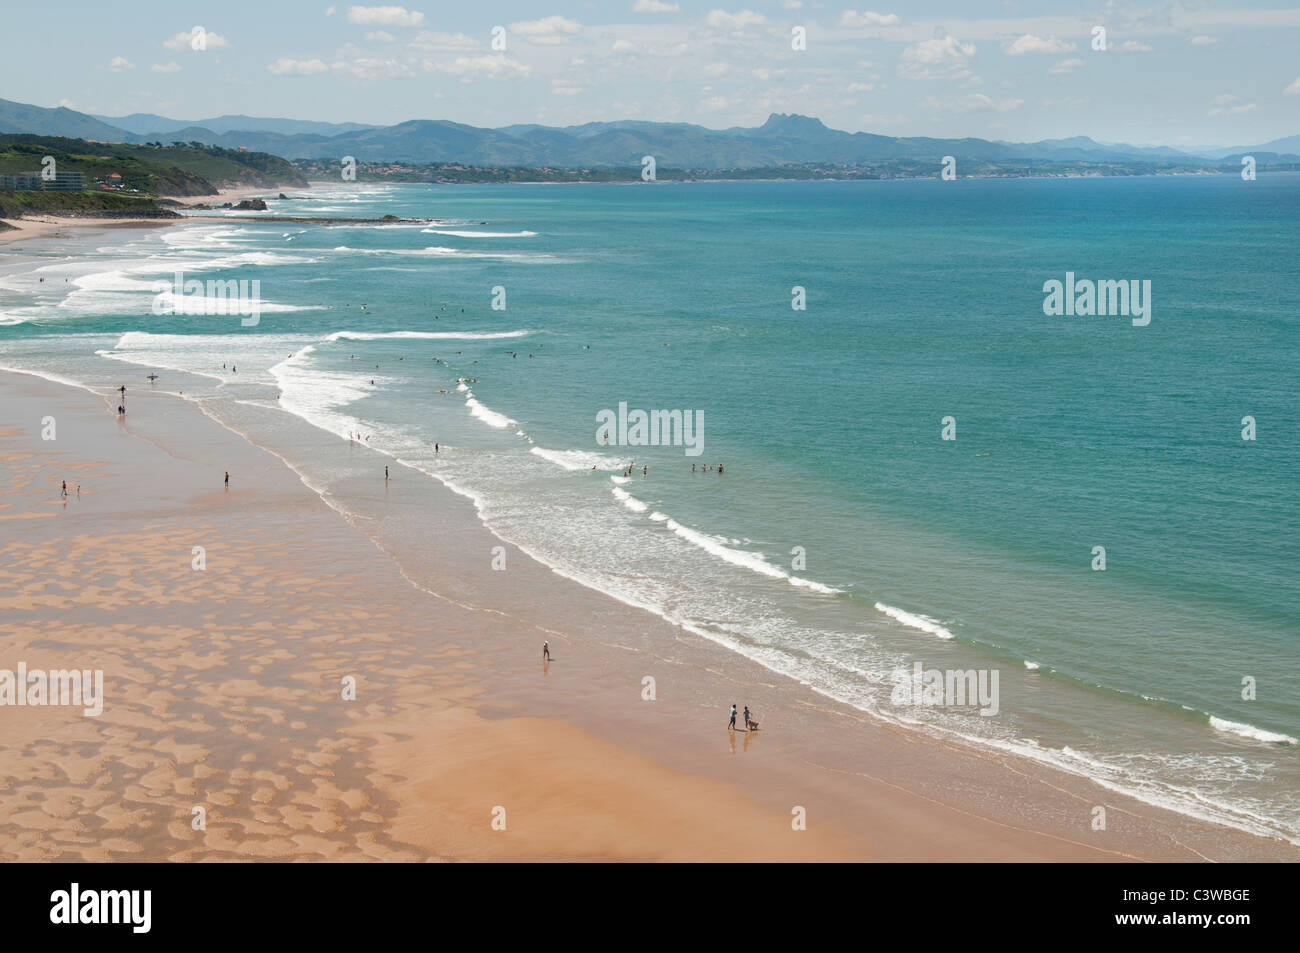 Francia St Jean de Luz un tipico villaggio di pescatori della costa basca sabbia spiaggia litorale del mare Foto Stock